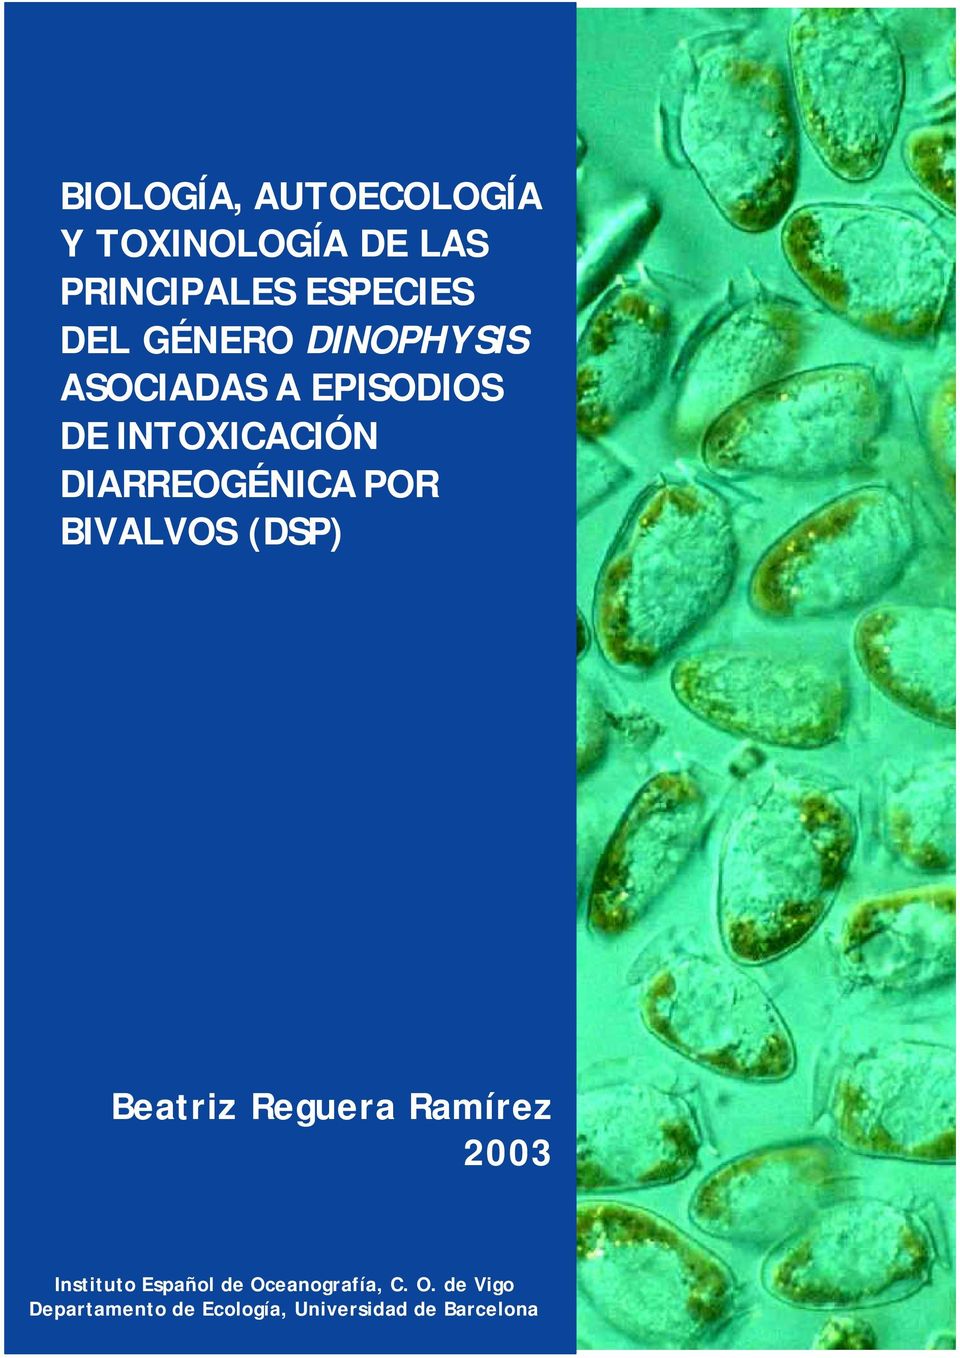 POR BIVALVOS (DSP) Beatriz Reguera Ramírez 2003 Instituto Español de